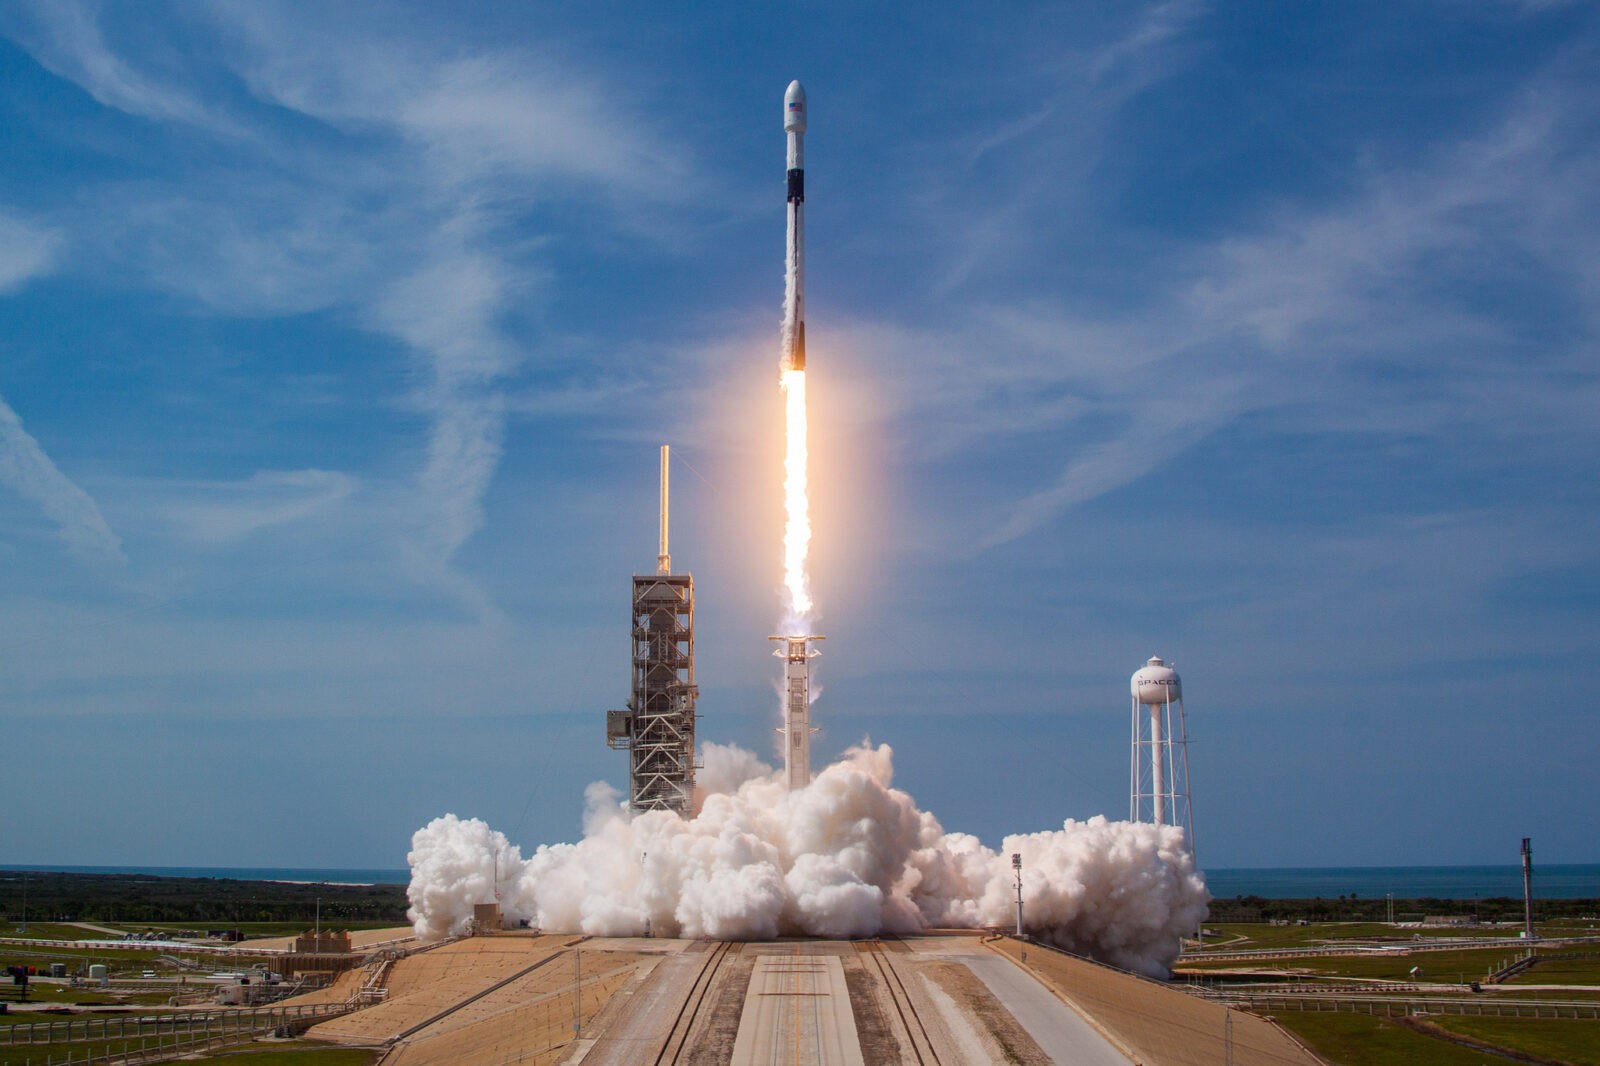 Fenomenalny widok. Rakieta SpaceX spowodowała powstanie świetlnego show na tle zorzy polarnej